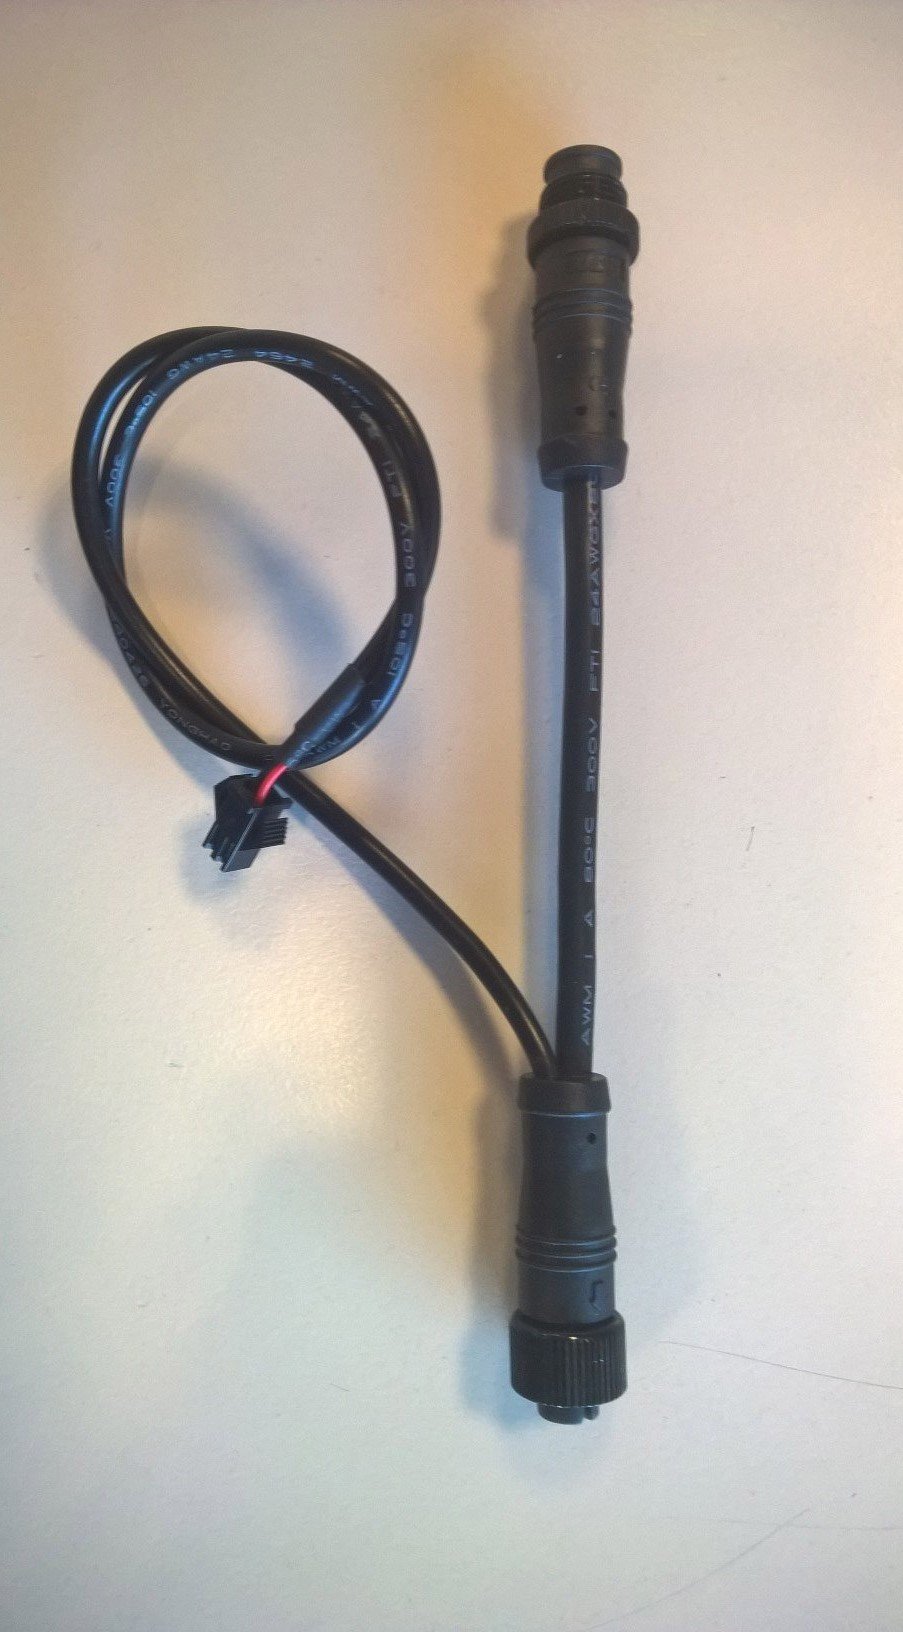 Bikkel iBee adapter kabel voor verlichting op de accu